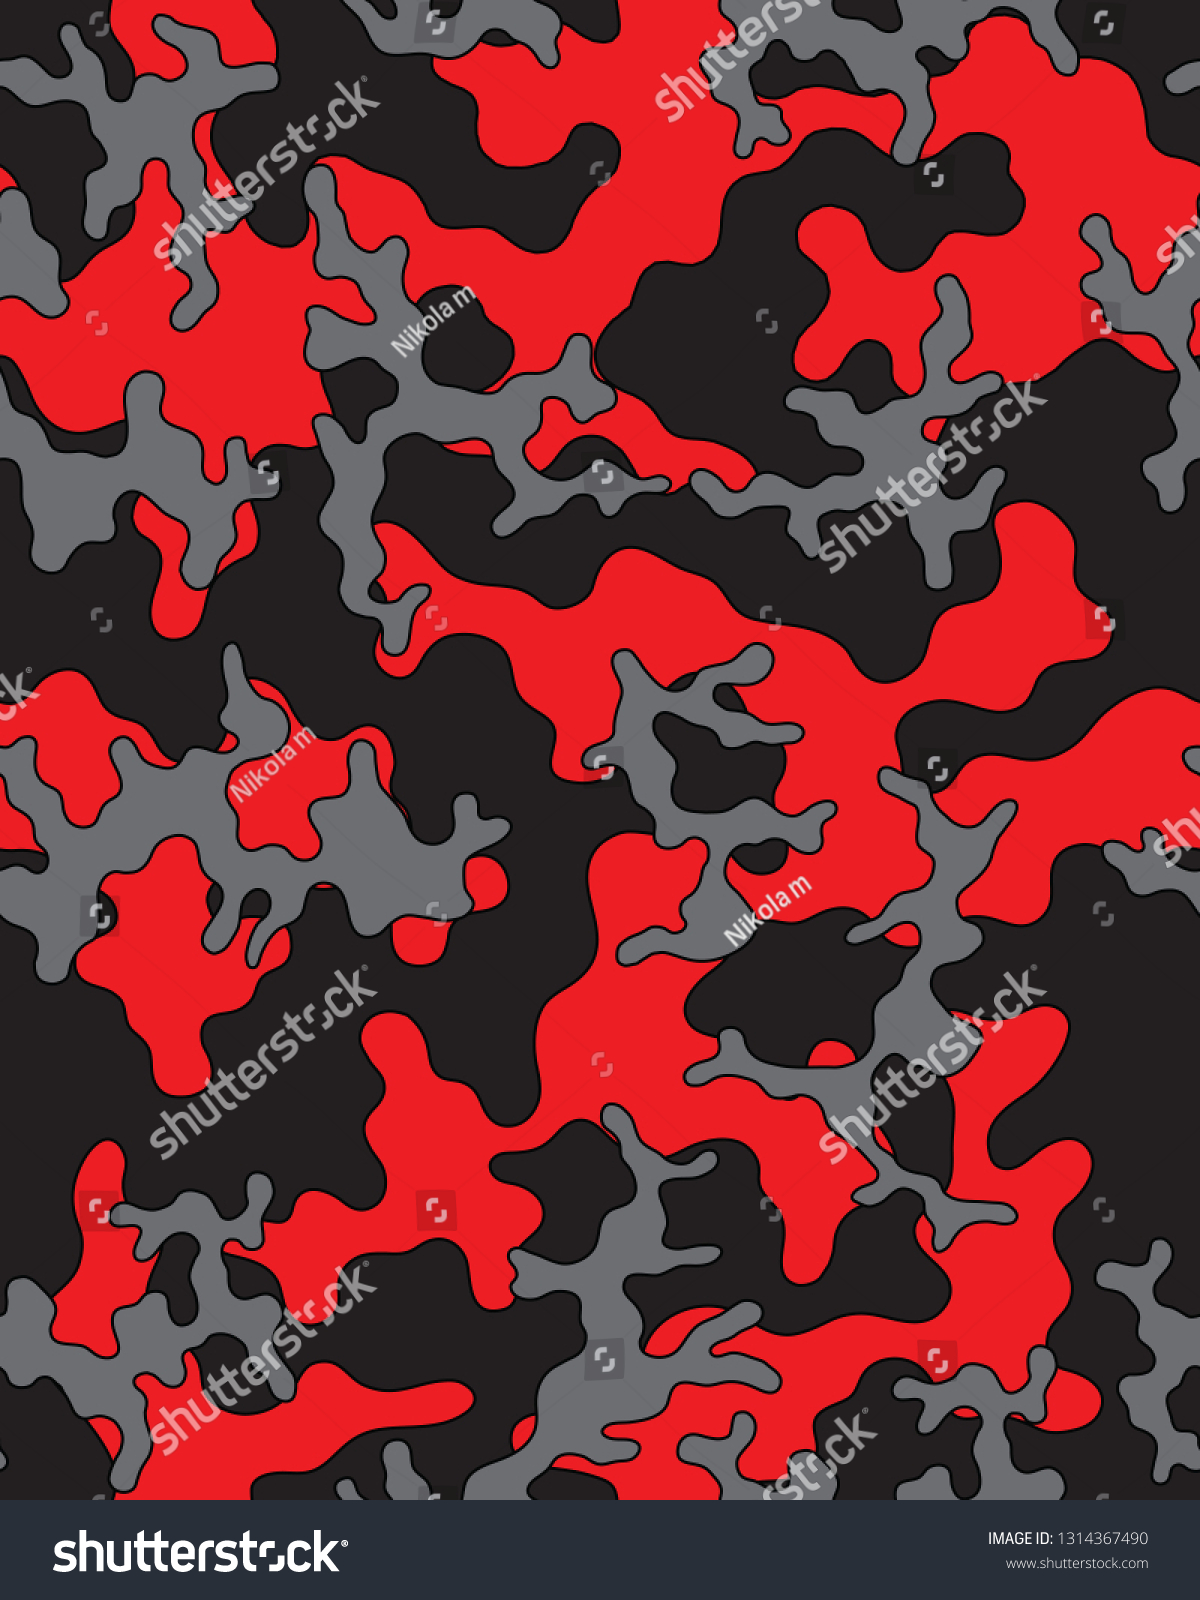 黒 赤 グレーの迷彩柄 シームレスな壁紙 カモデザイン 3色の組み合わせ 抽象的な軍隊スタイル ベクターイラスト のベクター画像素材 ロイヤリティフリー